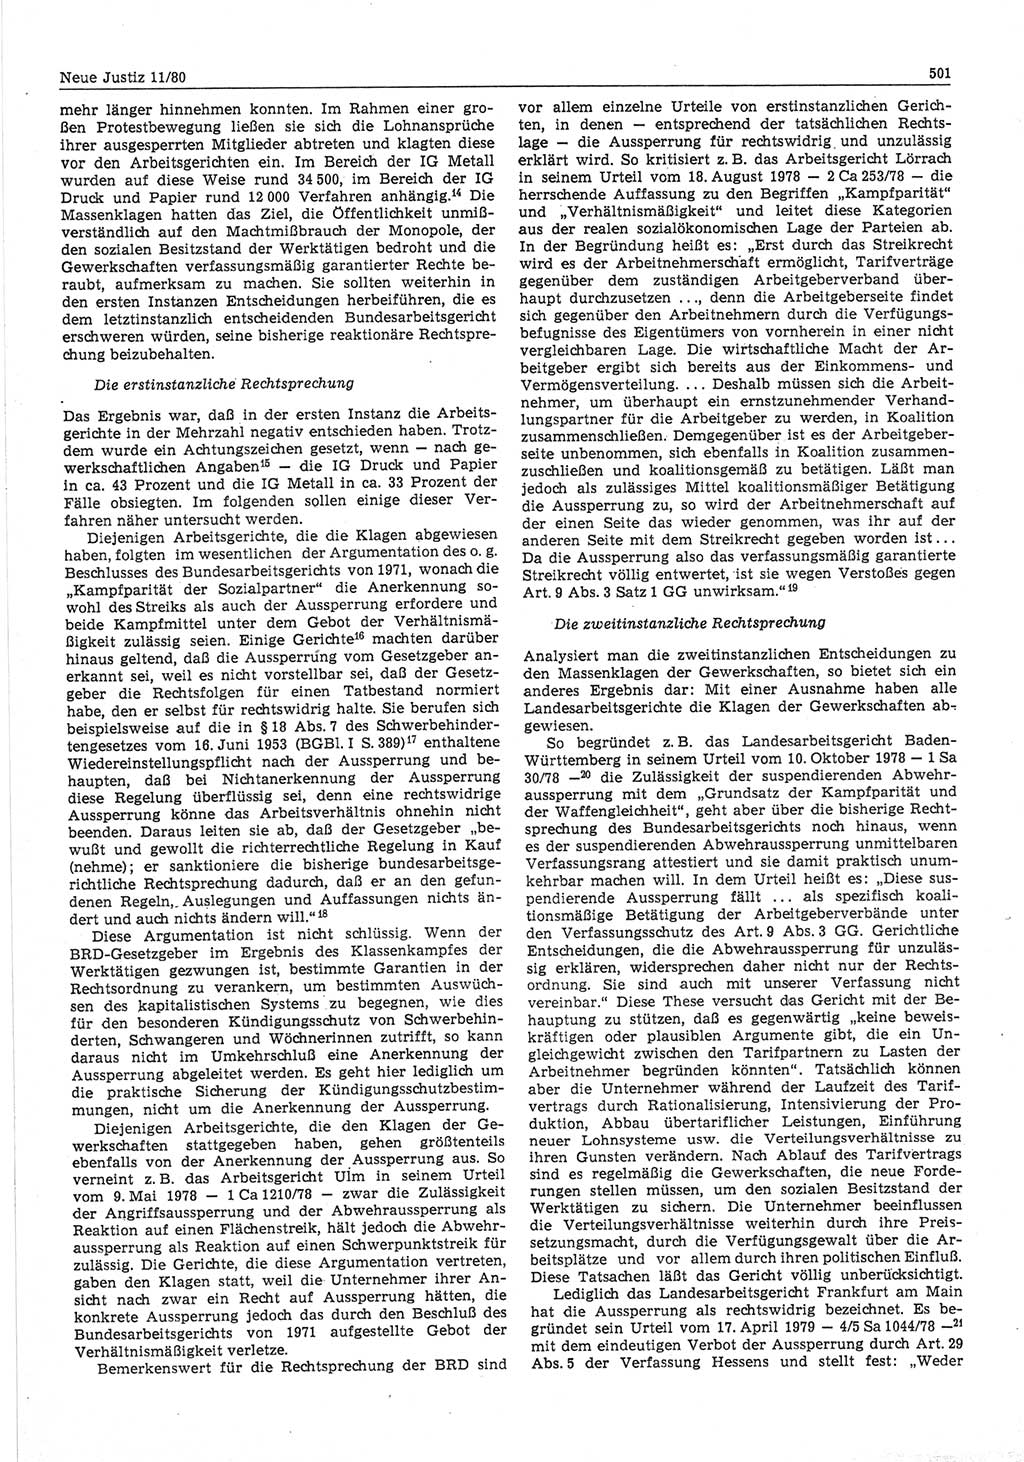 Neue Justiz (NJ), Zeitschrift für sozialistisches Recht und Gesetzlichkeit [Deutsche Demokratische Republik (DDR)], 34. Jahrgang 1980, Seite 501 (NJ DDR 1980, S. 501)